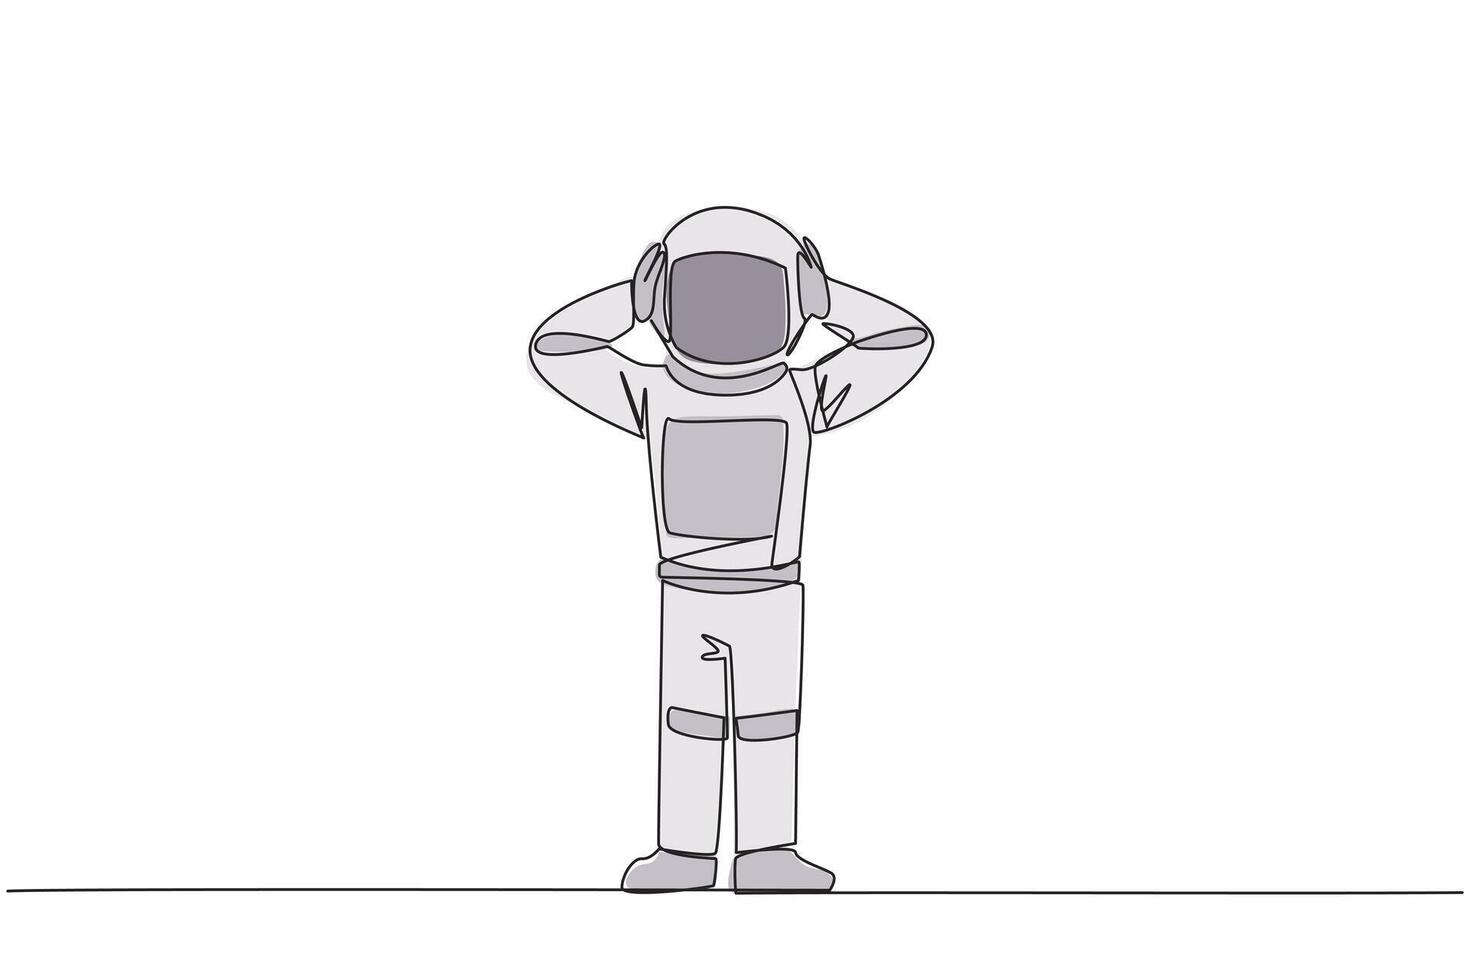 kontinuierlich einer Linie Zeichnung Astronaut Stehen Gerade halten Kopf mit beide Hände. Gesten aufgeregt oder überrascht. ungewöhnlich Gesichts- Ausdrücke. erschrocken. Single Linie zeichnen Design Illustration vektor